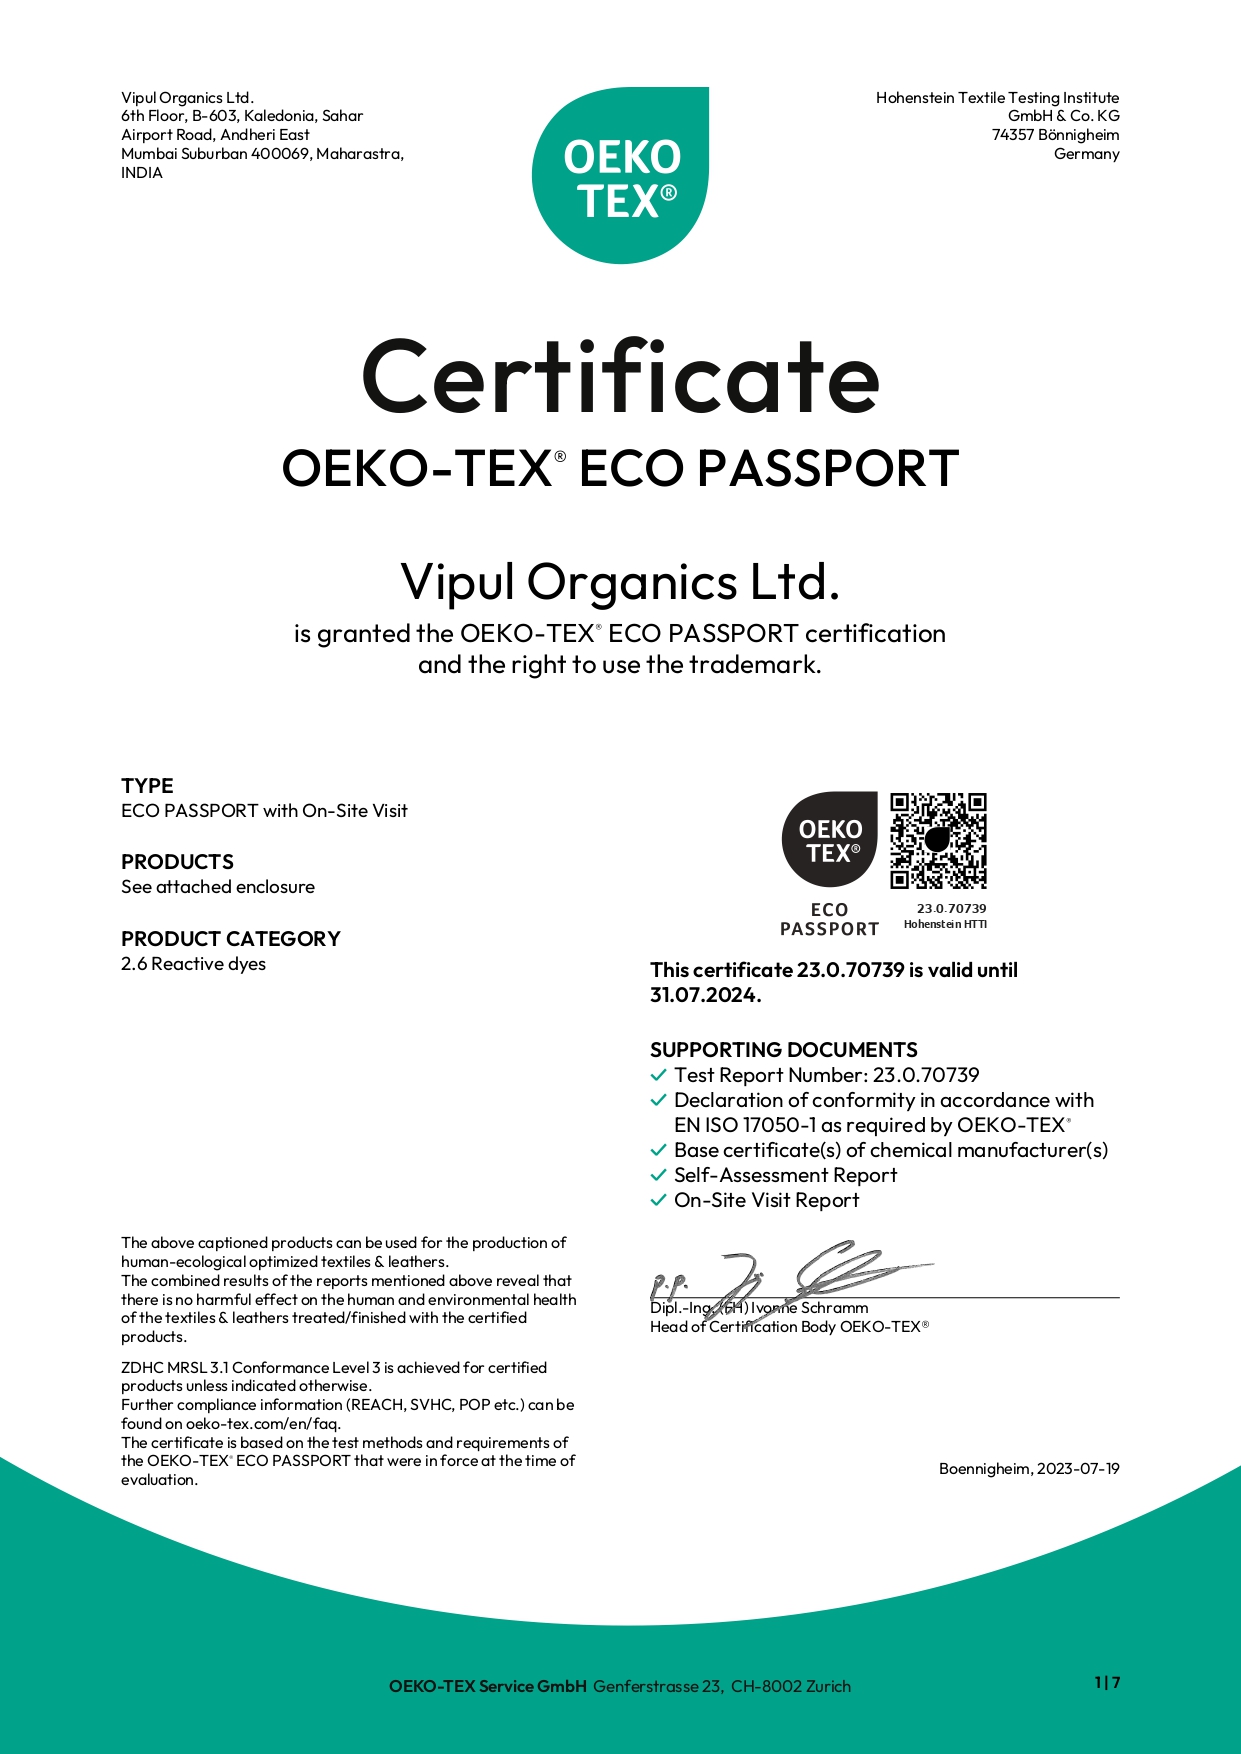 OEKO-TEX ECO PASSPORT Certificate